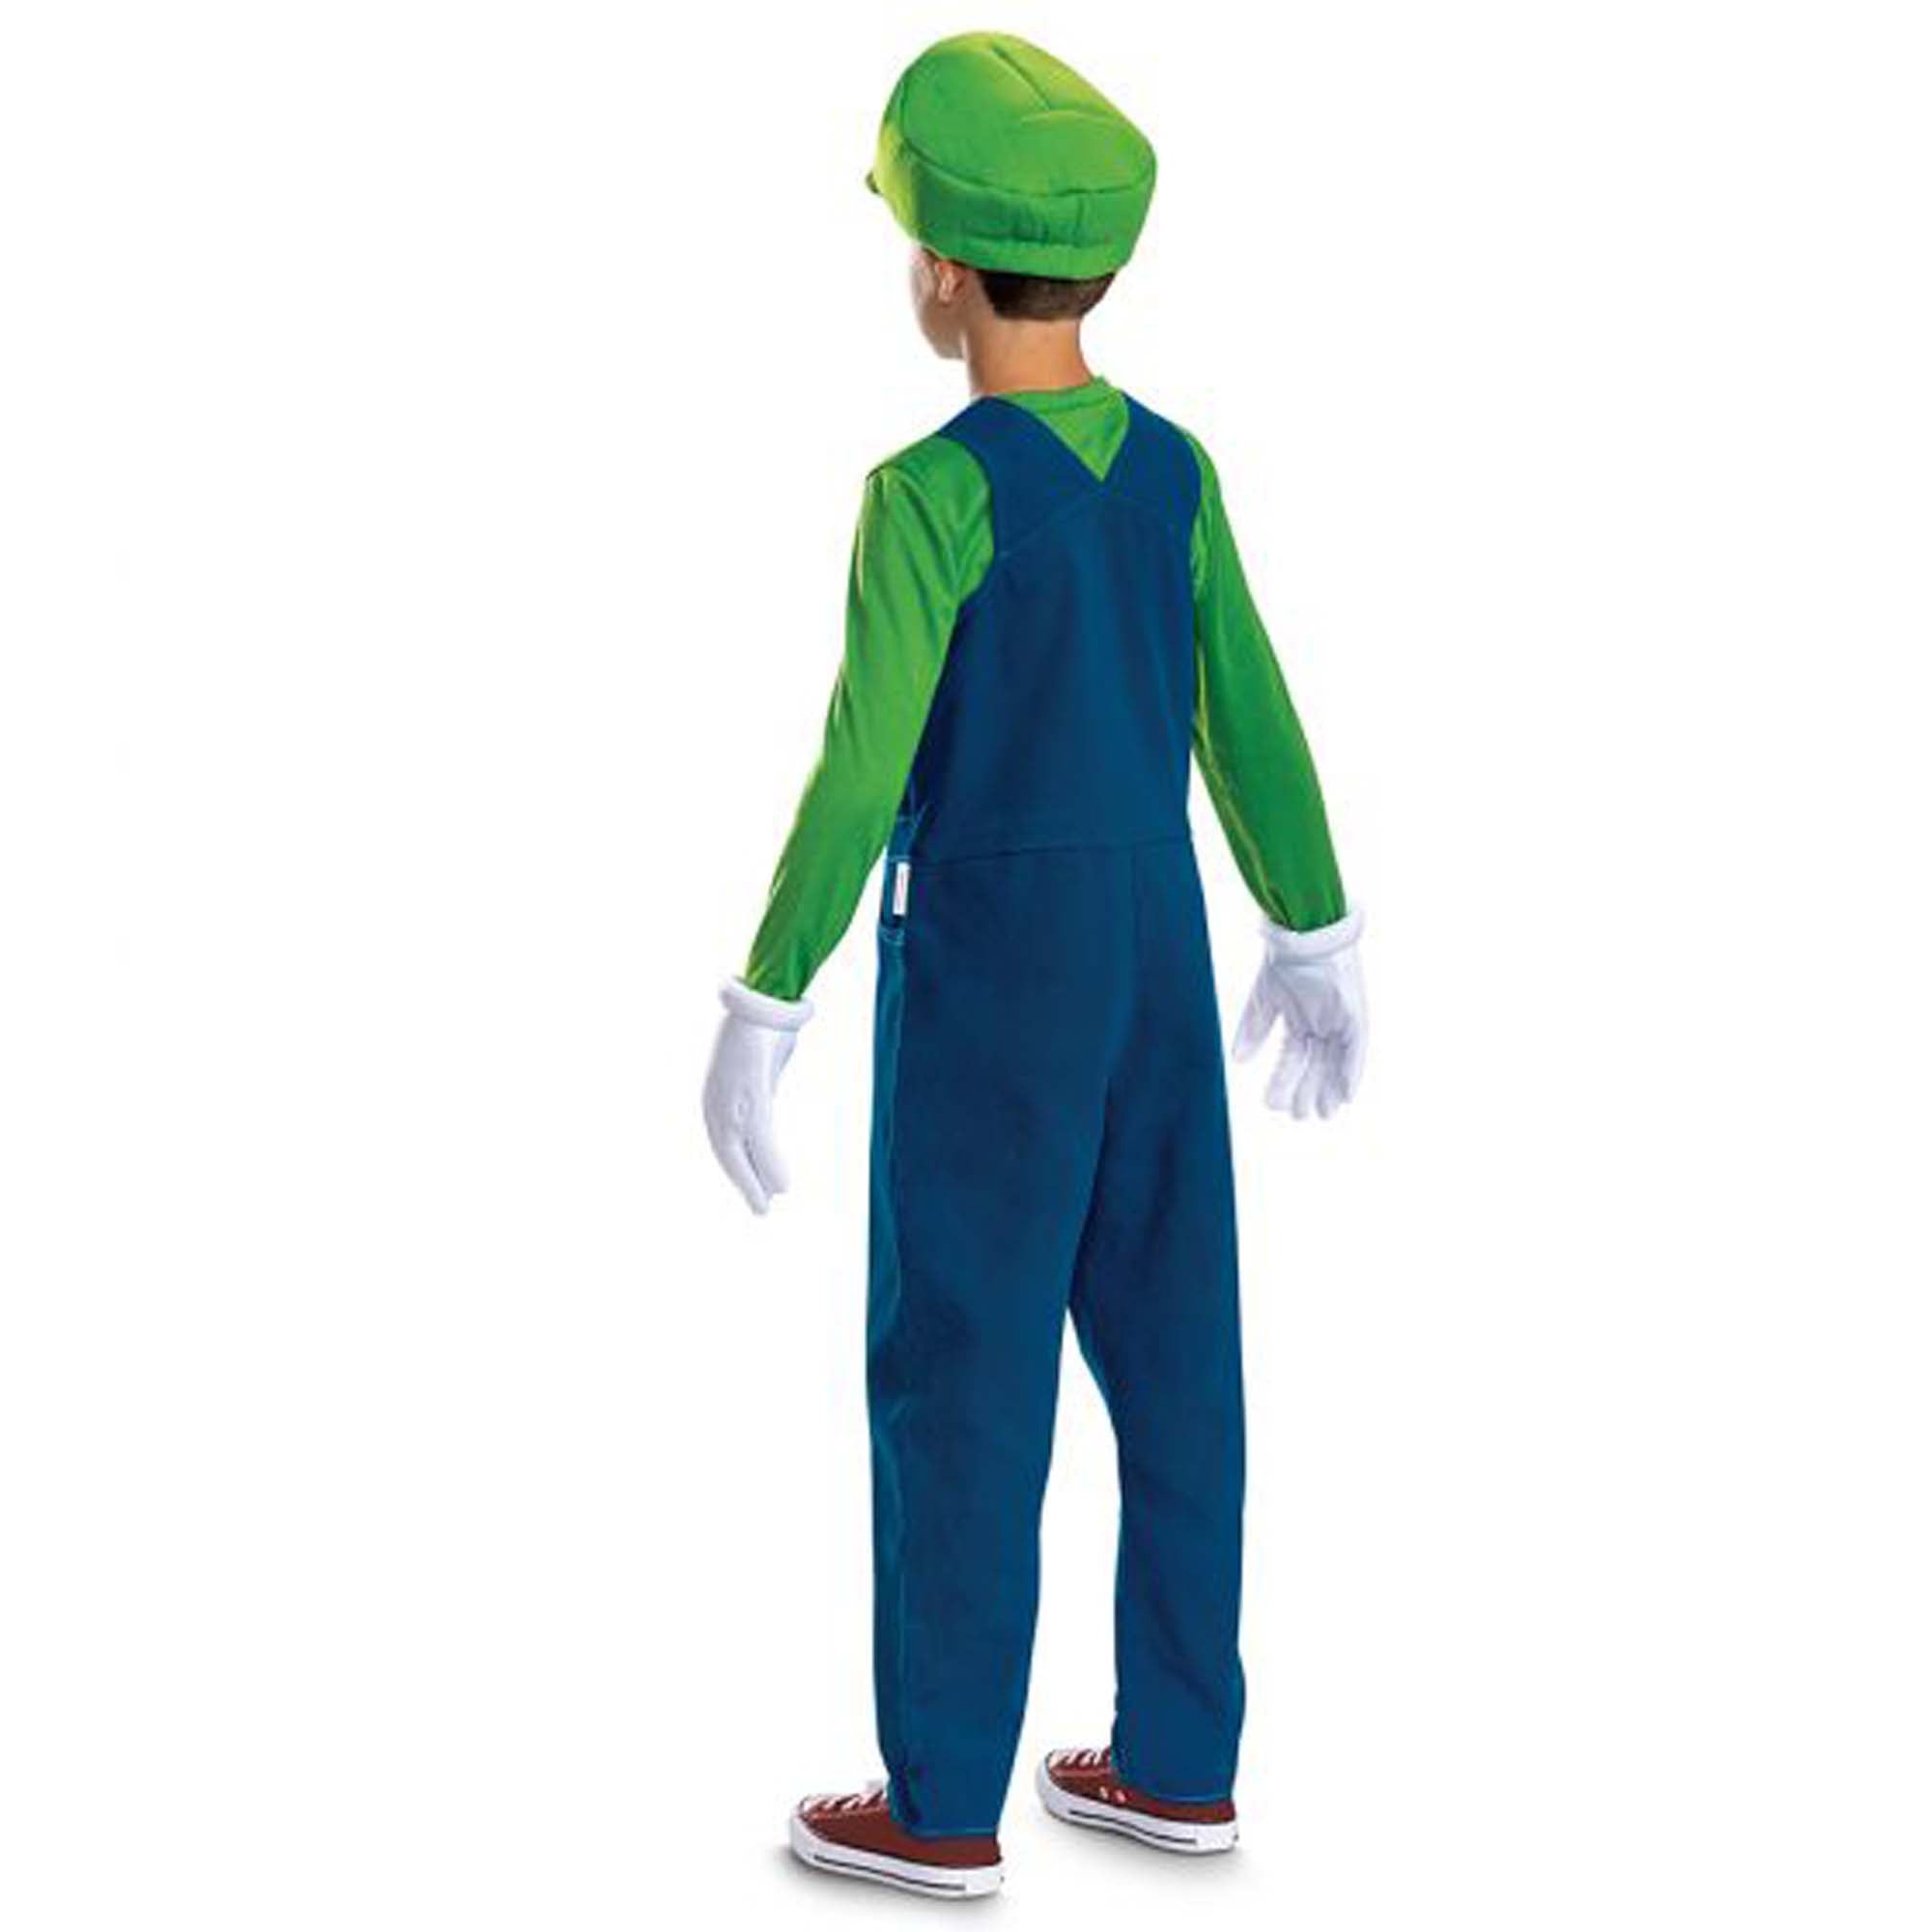 Déguisement Luigi pour enfant de Super mario bros